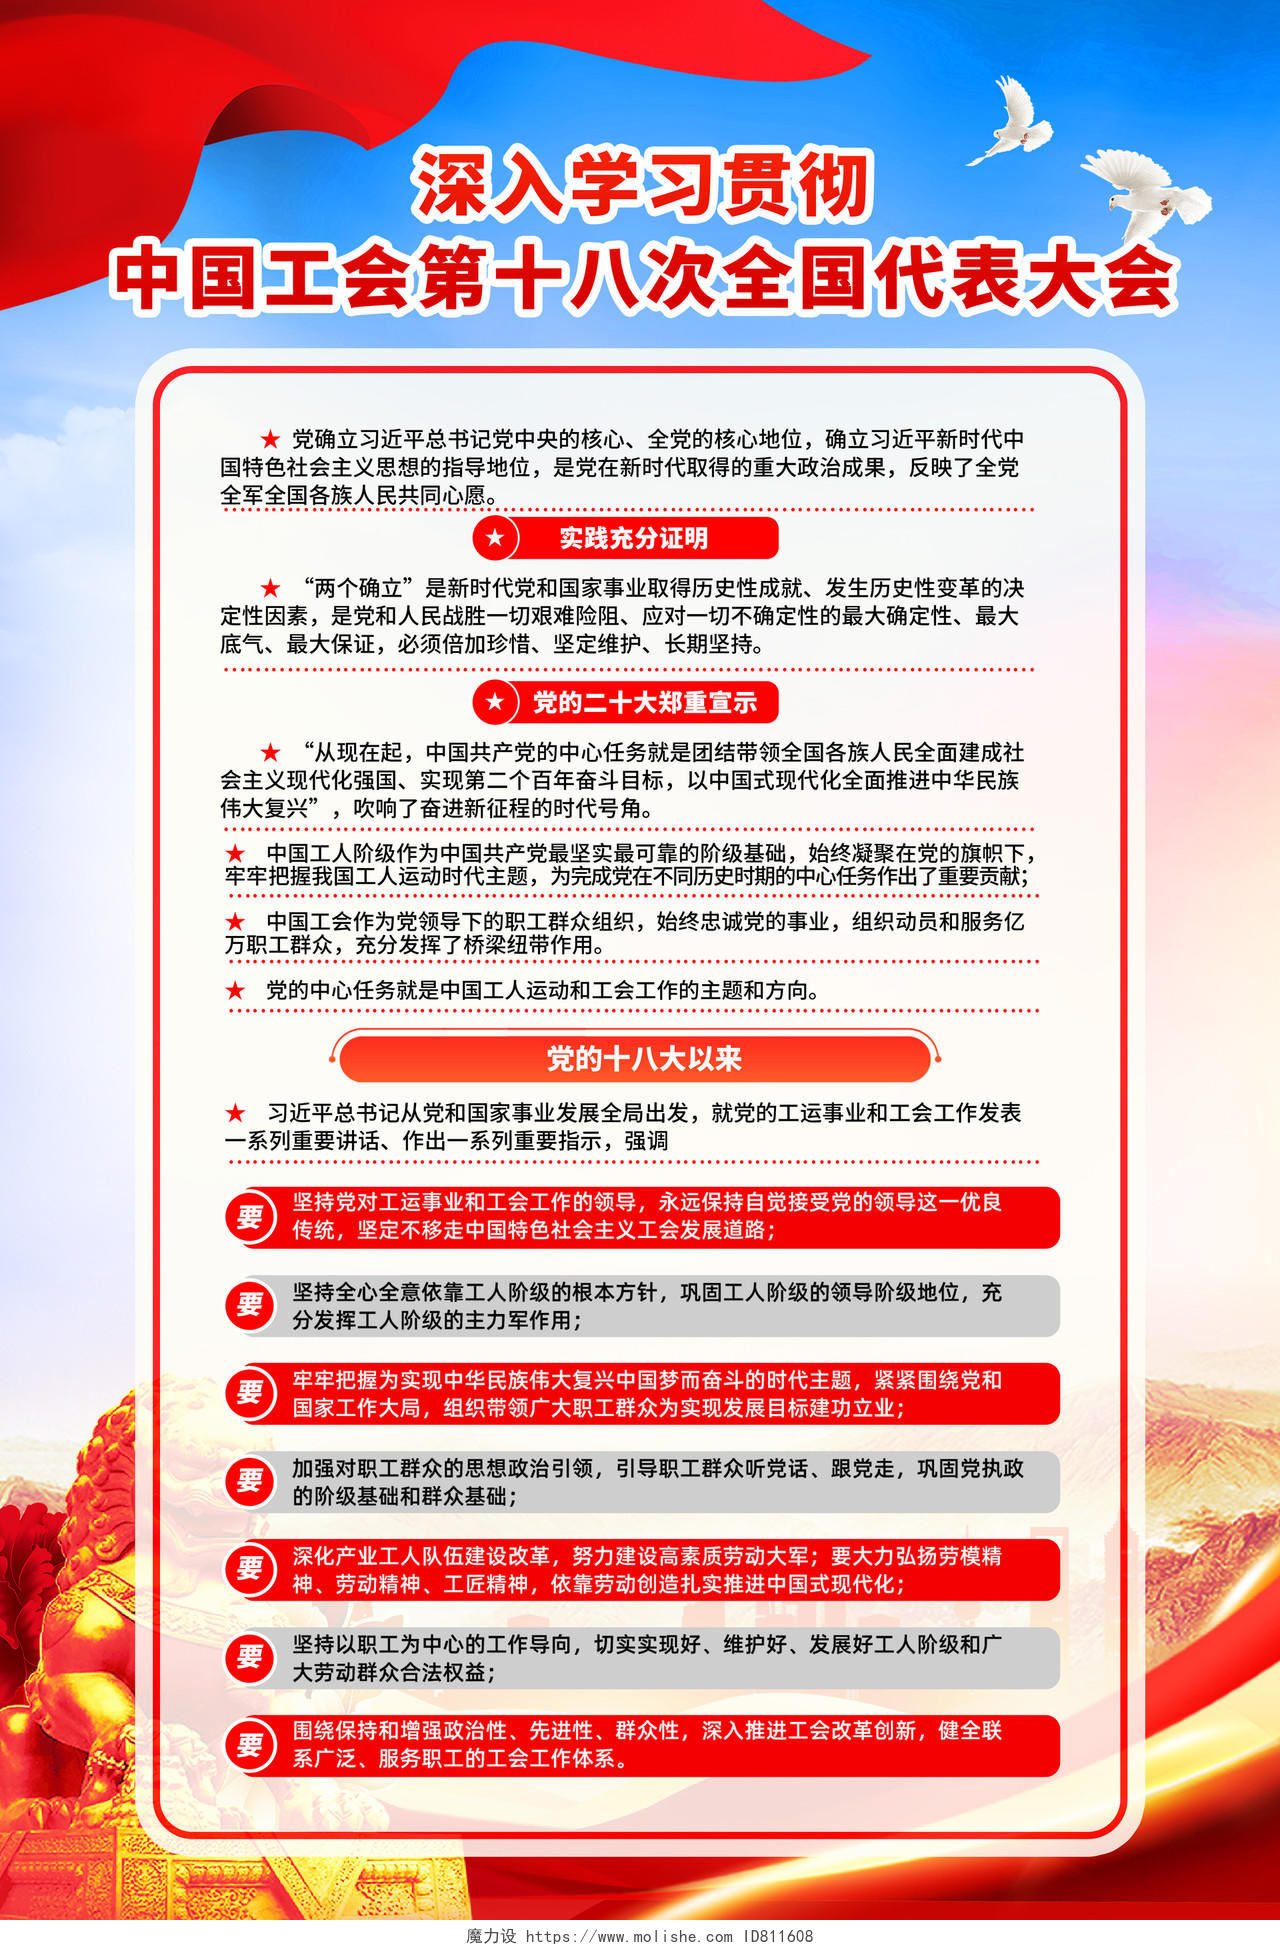 蓝色简约大气中国工会第十八次全国代表大会宣传海报党建套图挂画